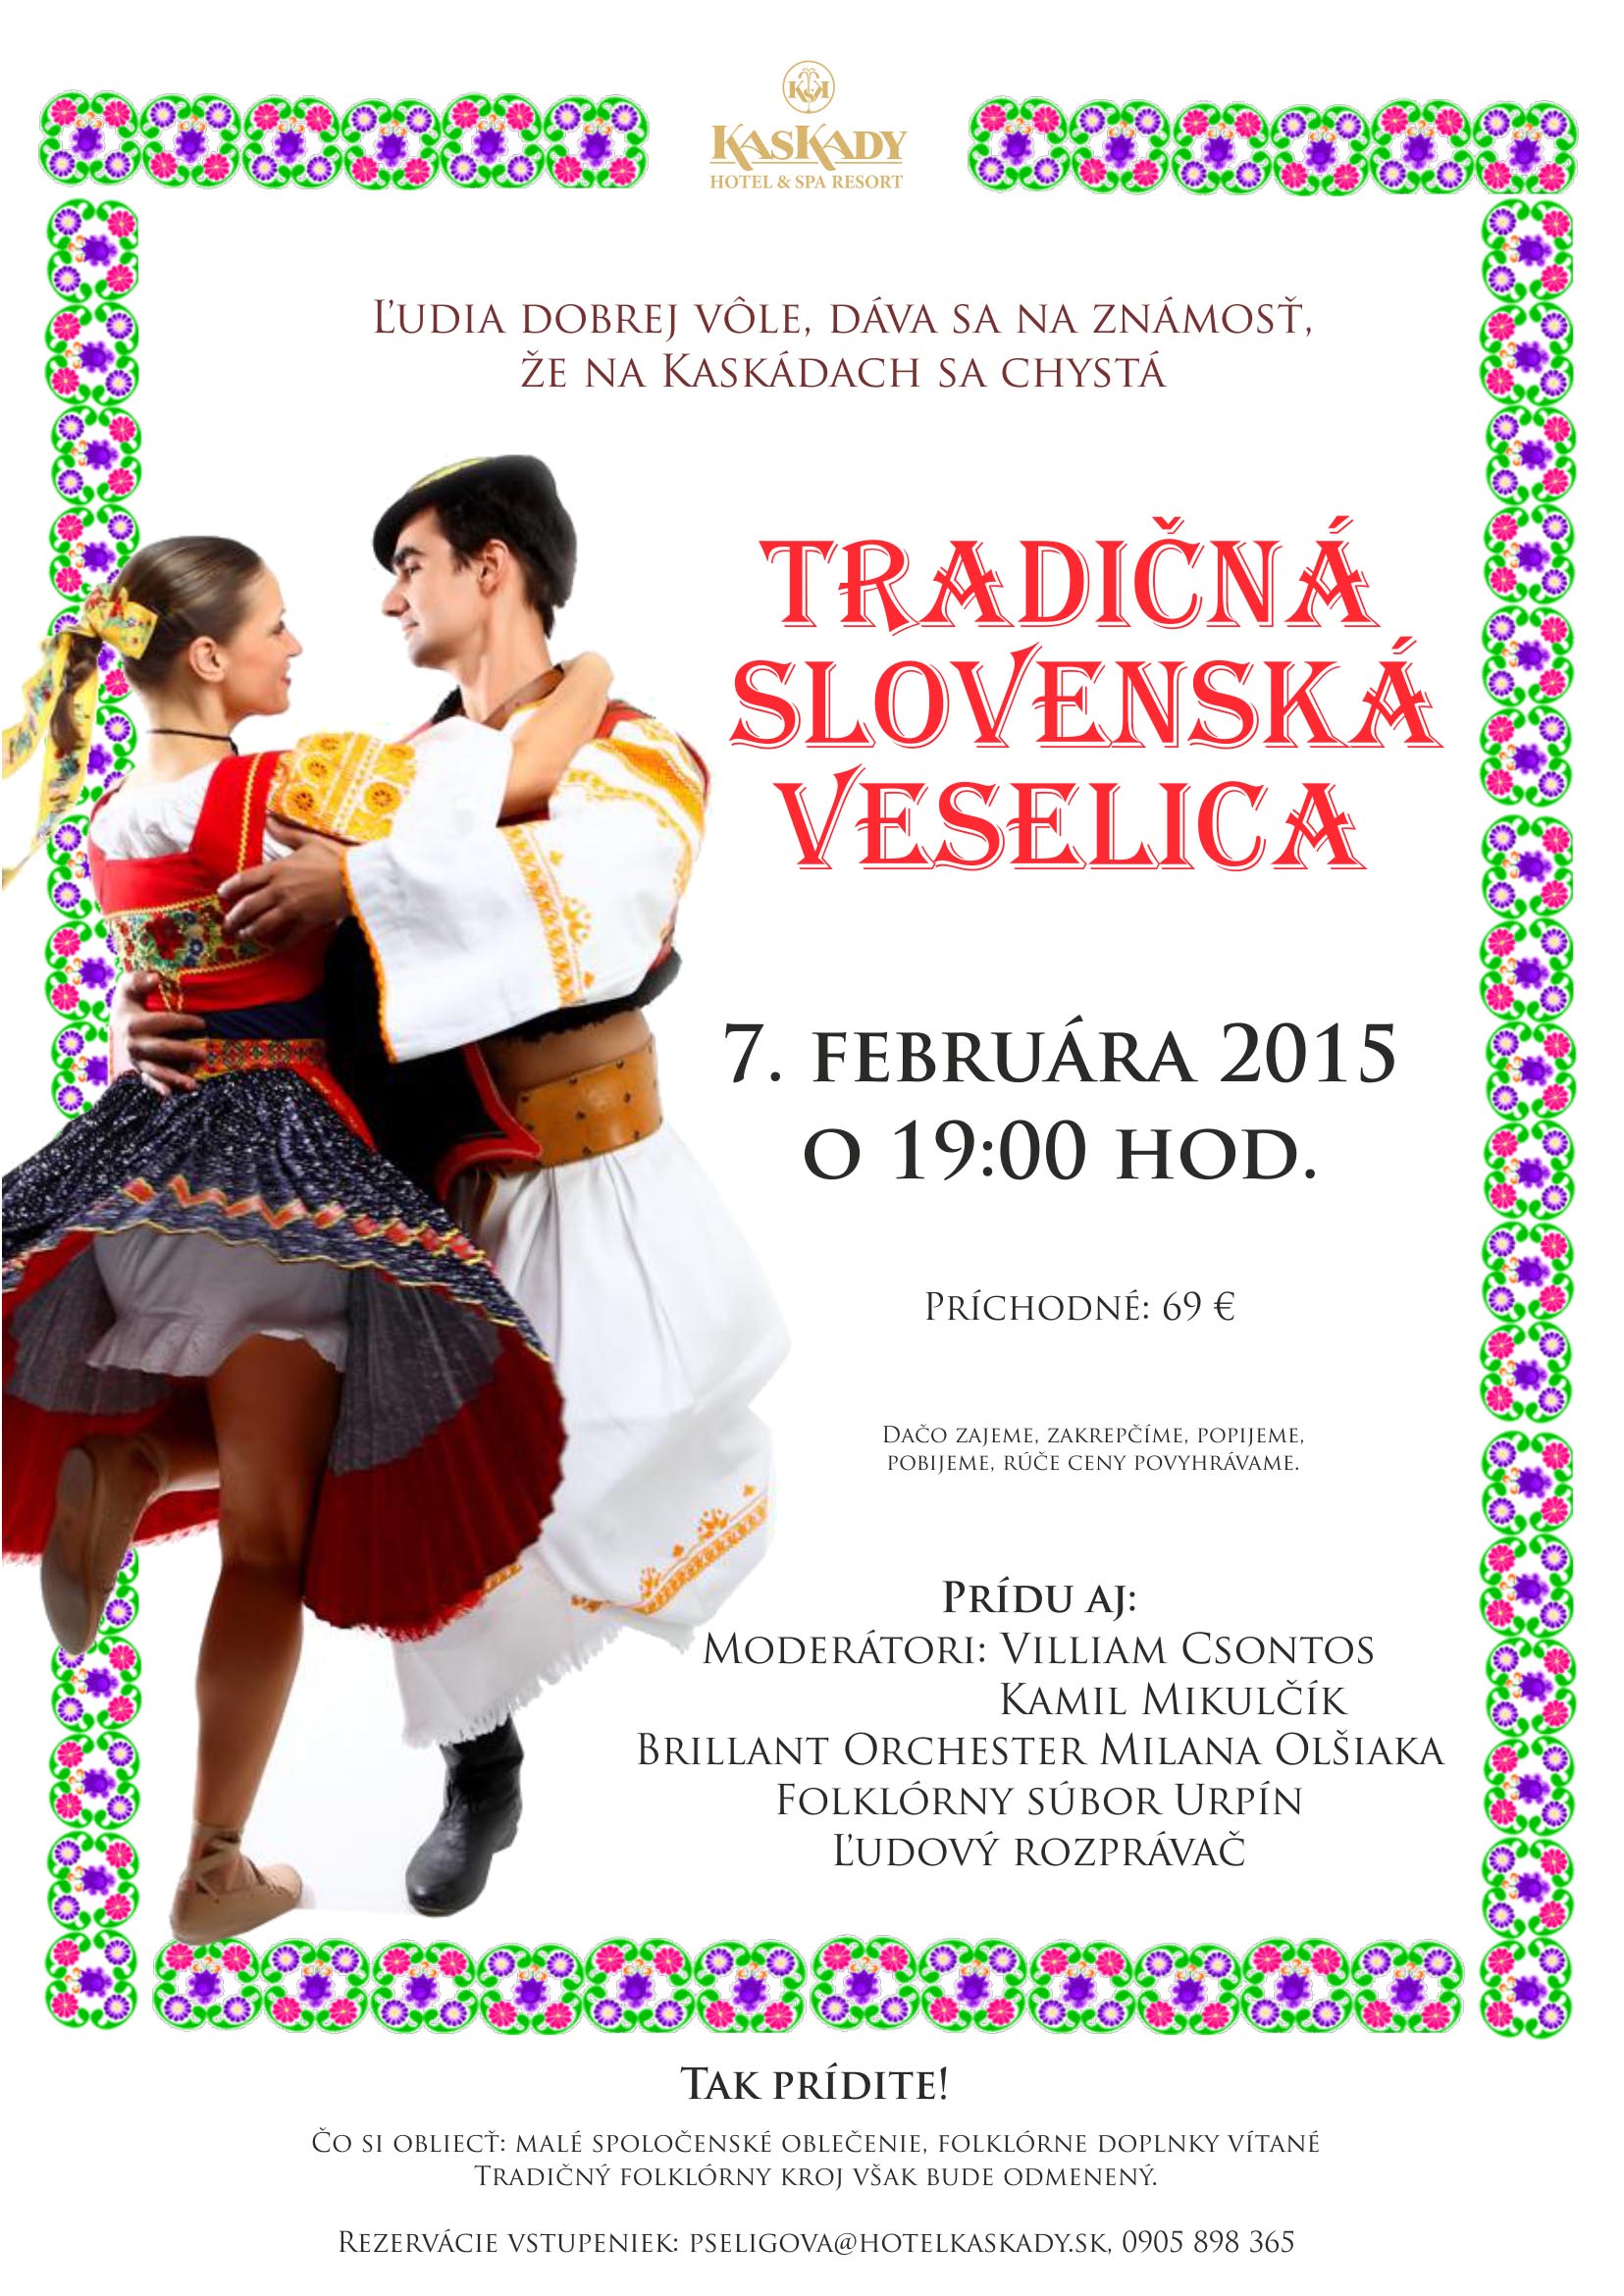 Tradin slovensk veselica Slia - Sielnica